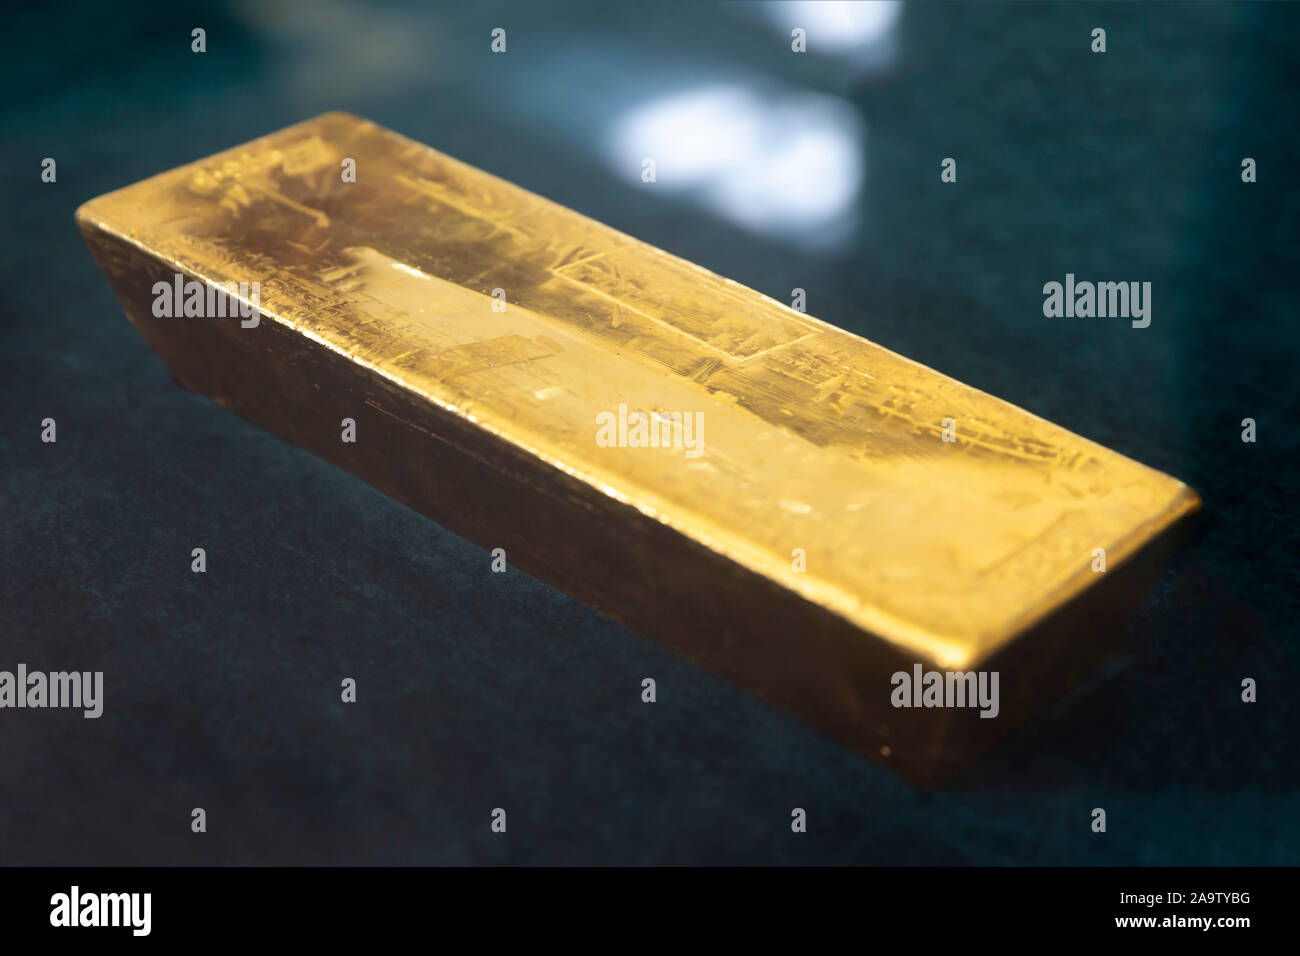 Echtes gold bar Bullion invertiert wird auf einem schwarzen Hintergrund zu sehen. Stockfoto